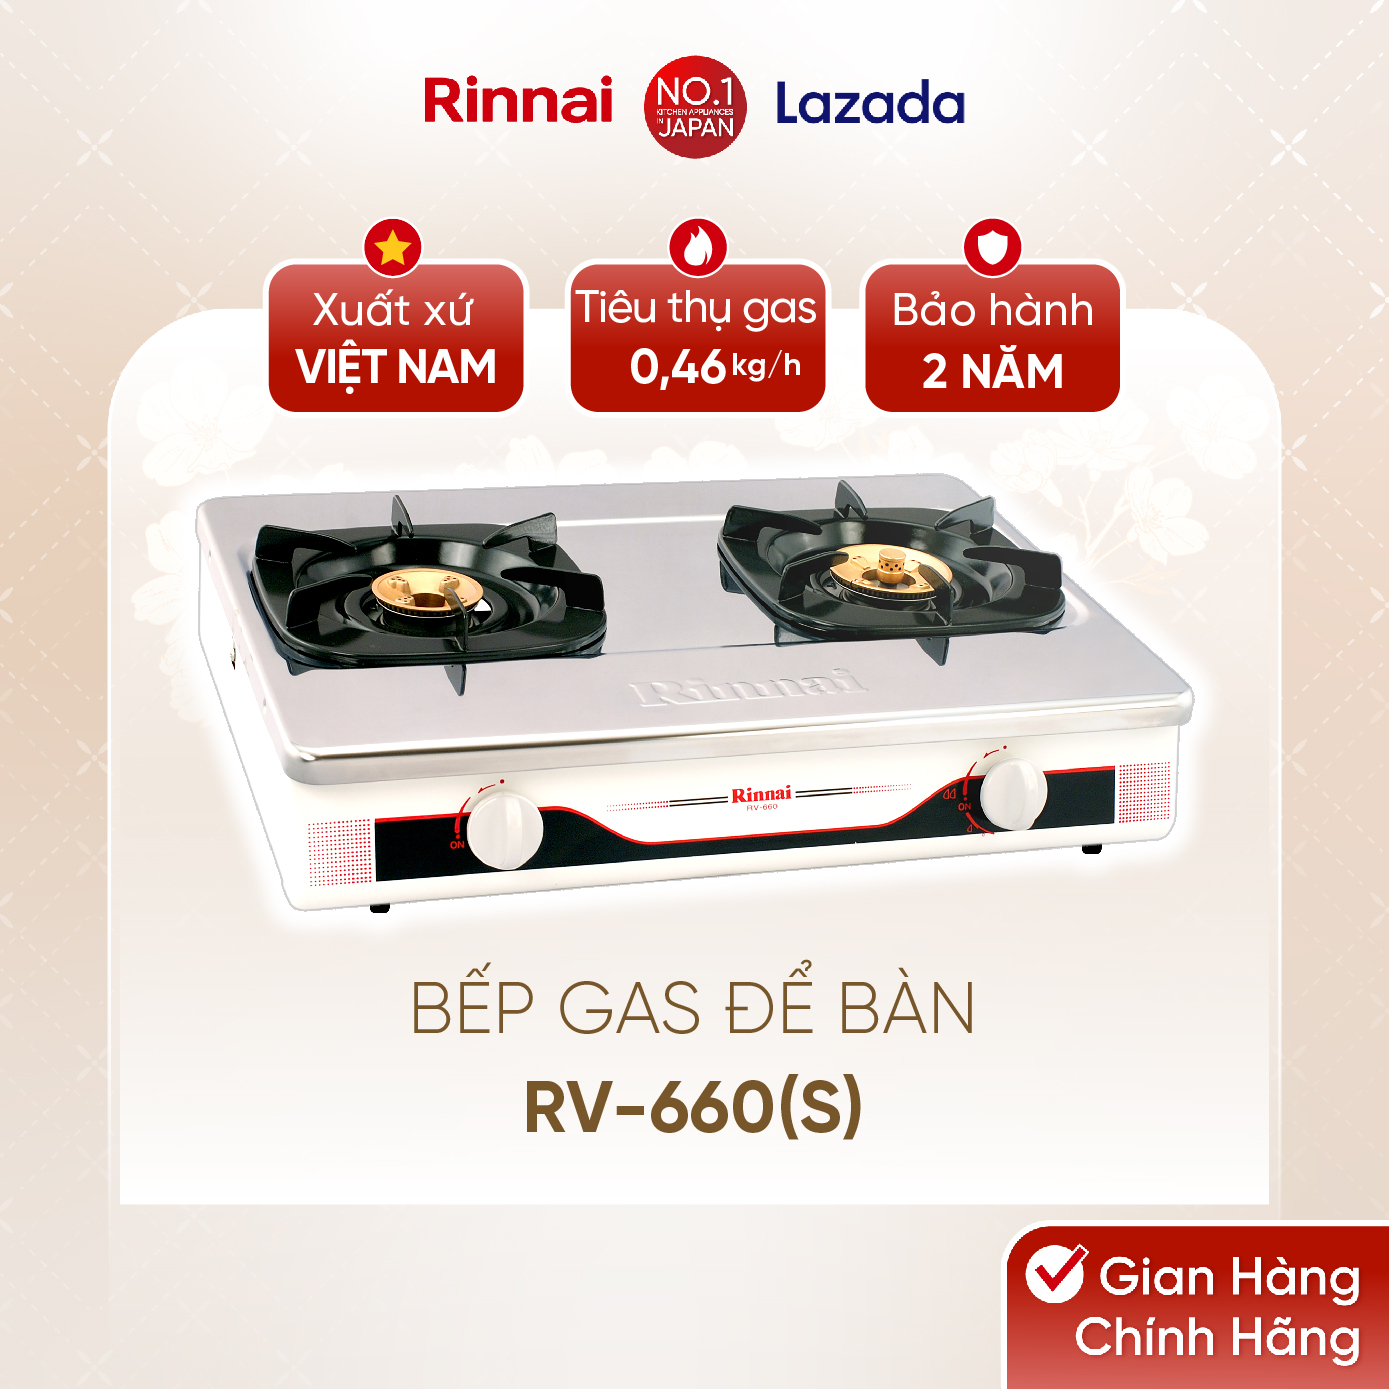 Bếp gas dương Rinnai RV-660(S) mặt bếp inox và kiềng bếp men - Hàng chính hãng.